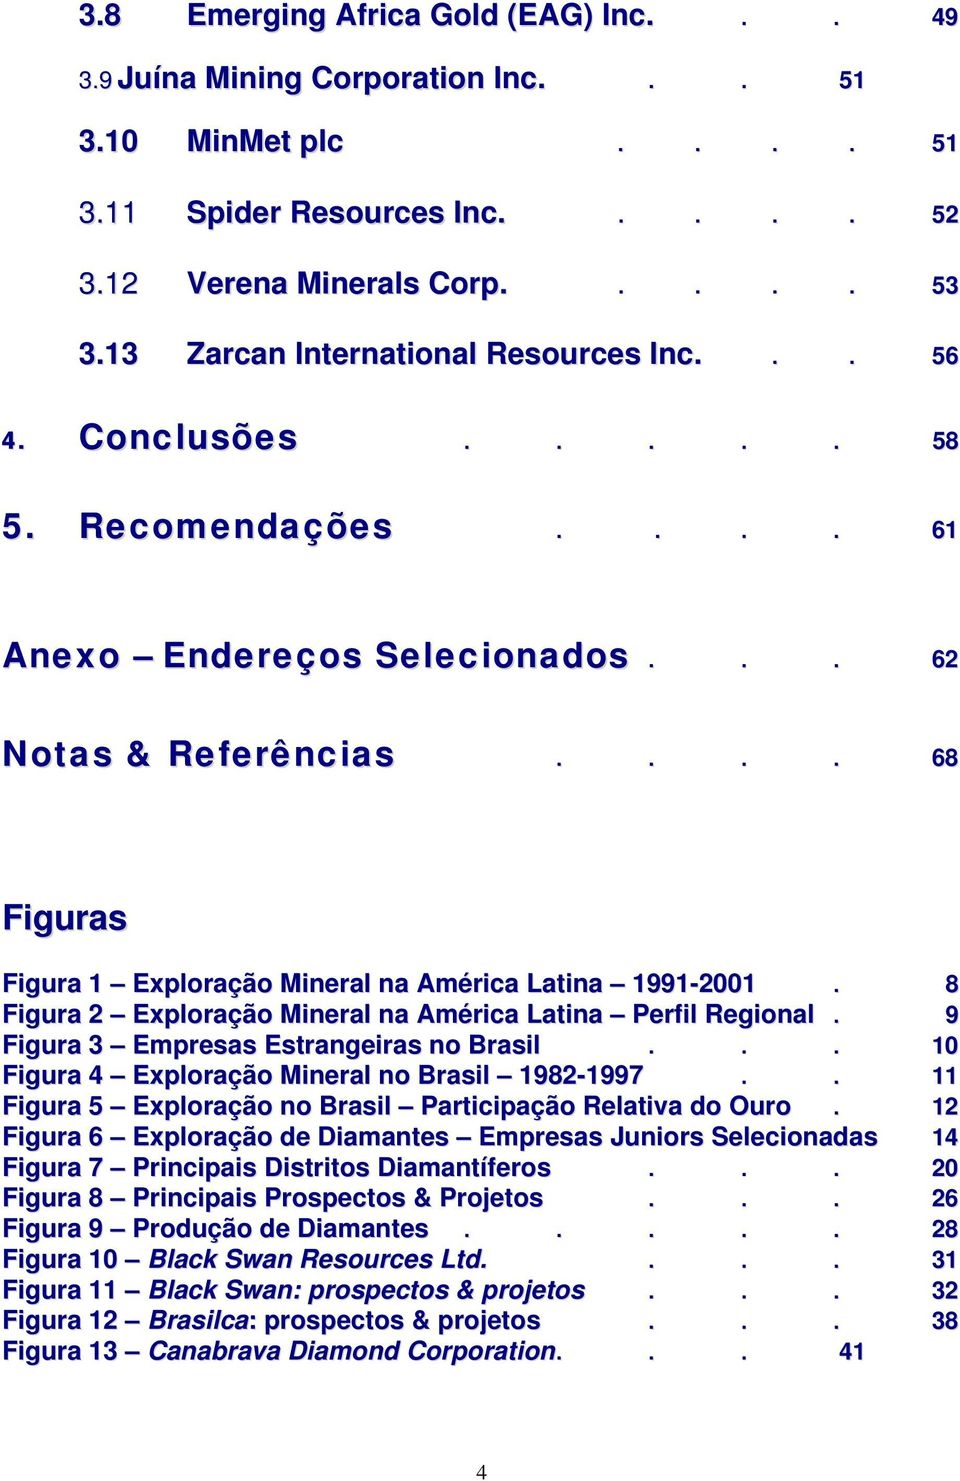 ... 68 Figuras Figura 1 Exploração Mineral na América Latina 1991-2001. 8 Figura 2 Exploração Mineral na América Latina Perfil Regional. 9 Figura 3 Empresas Estrangeiras no Brasil.